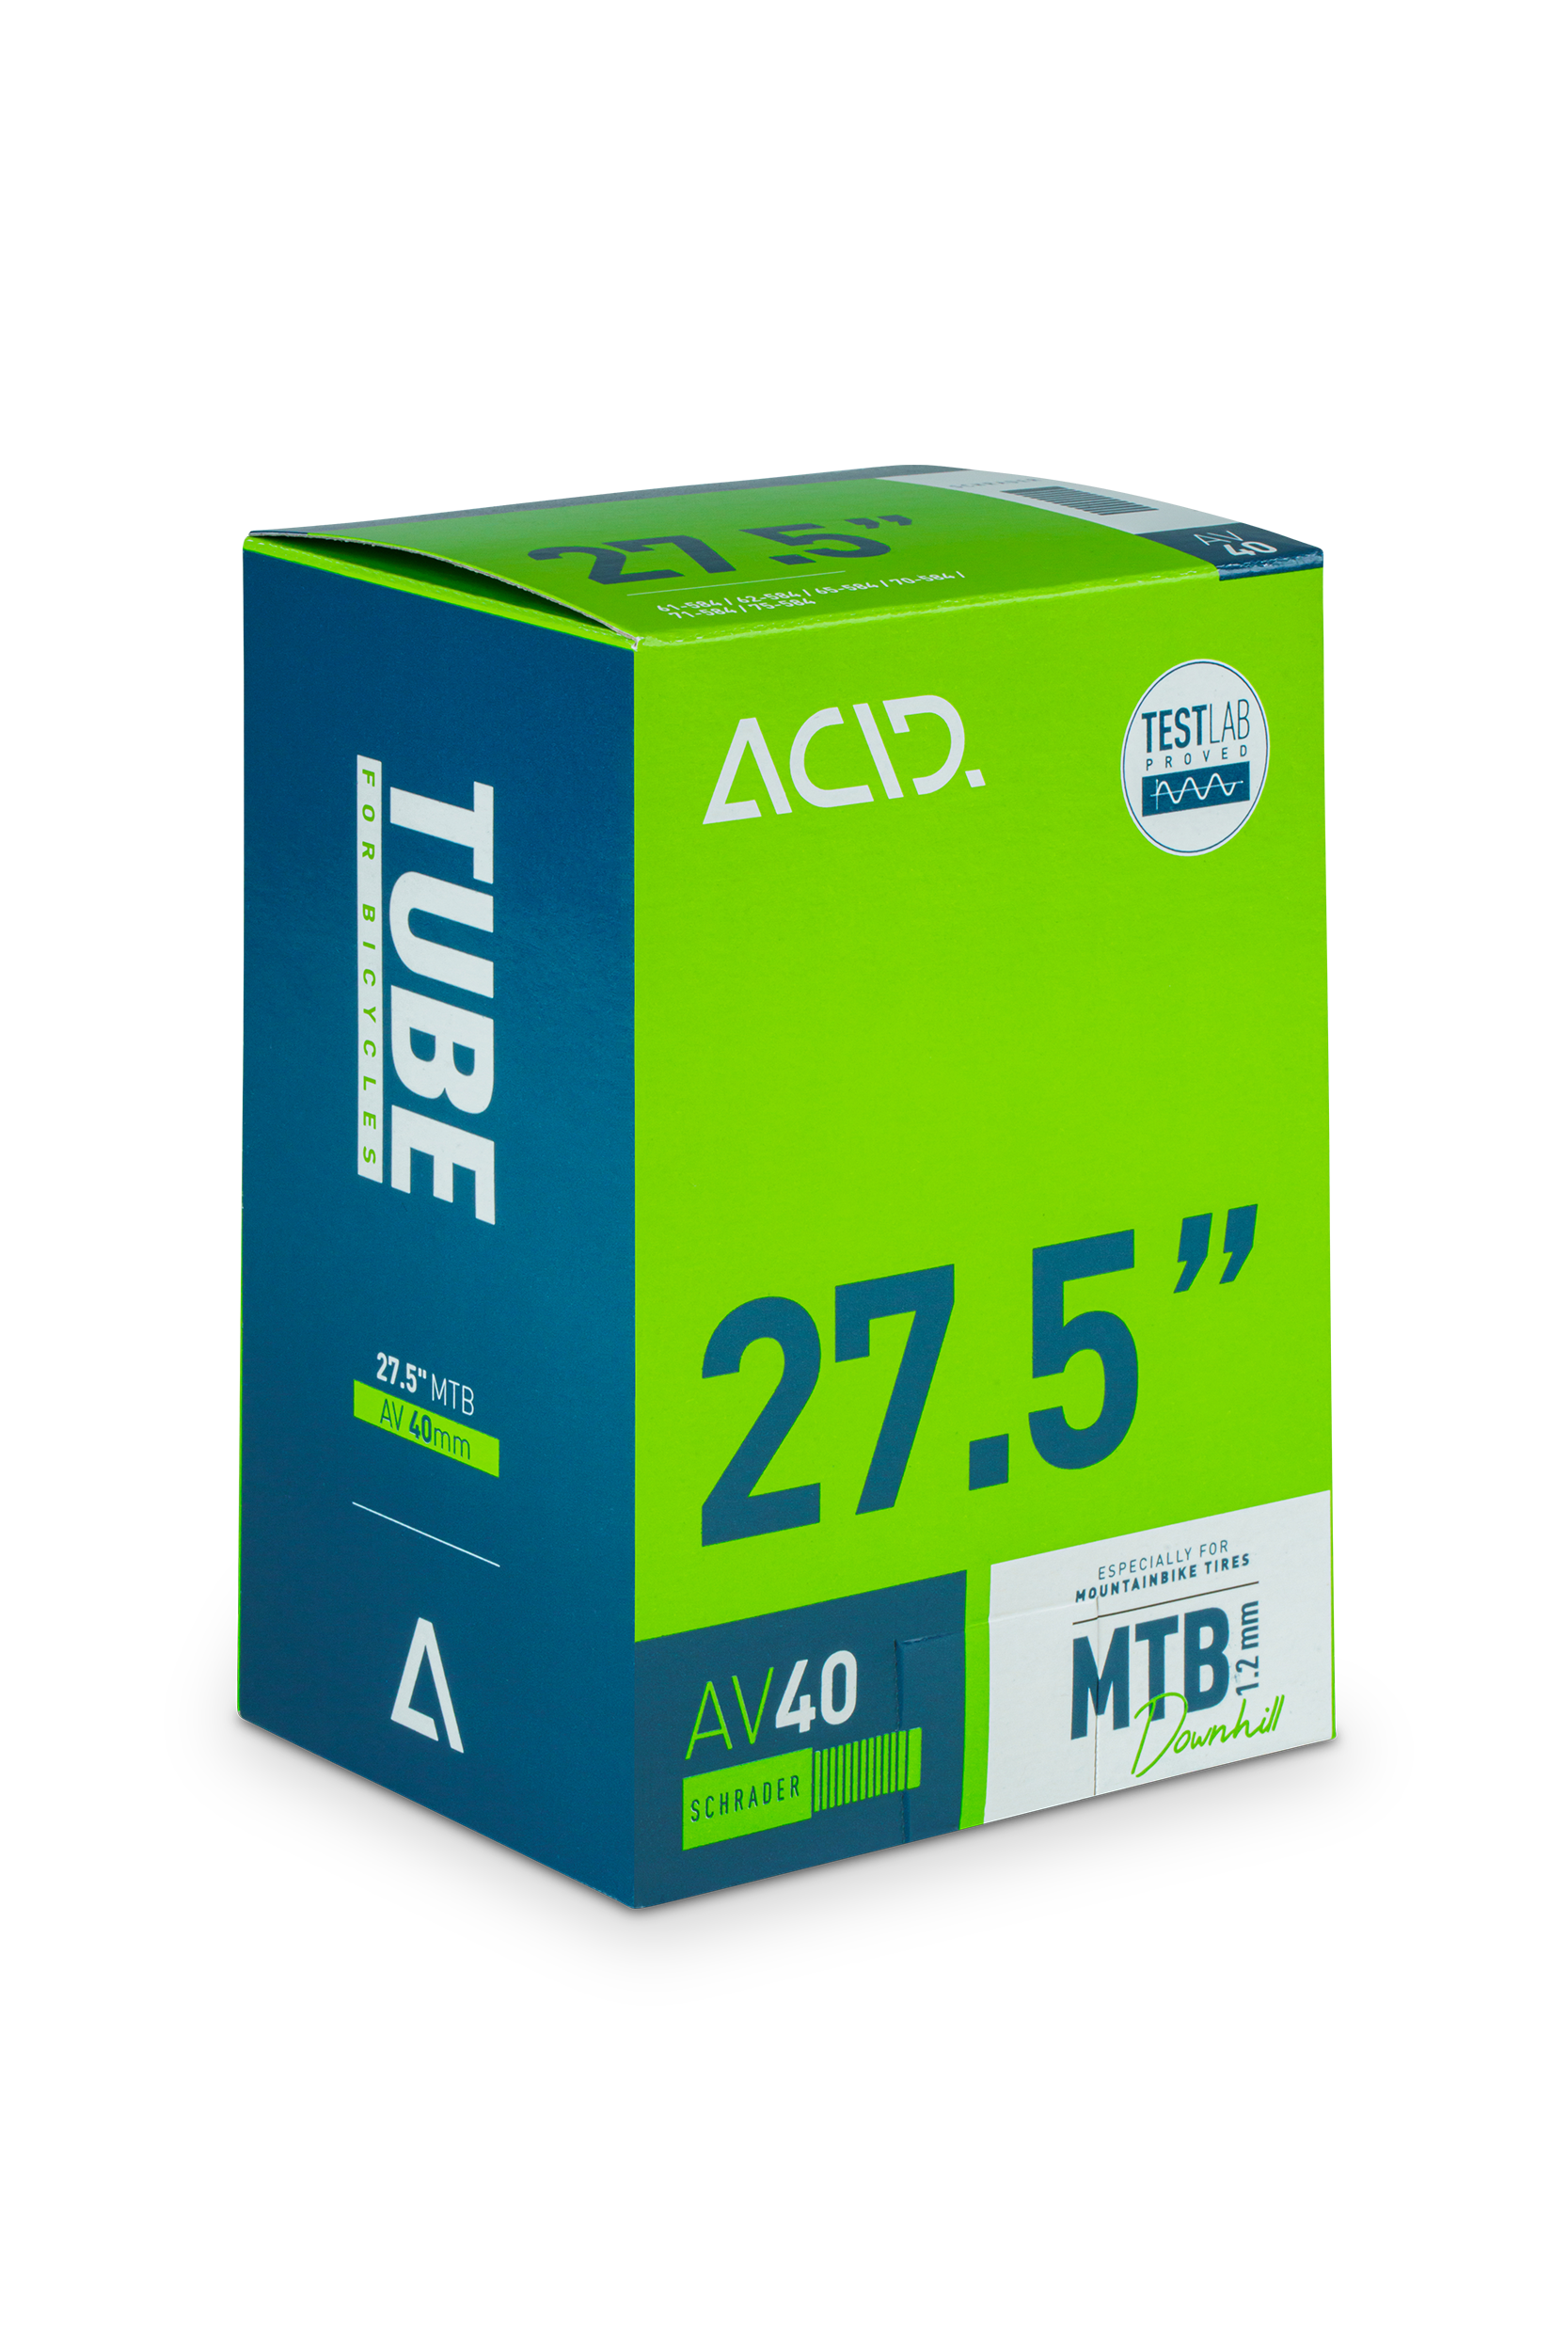 ACID Tube 27,5" MTB Downhill AV 40mm